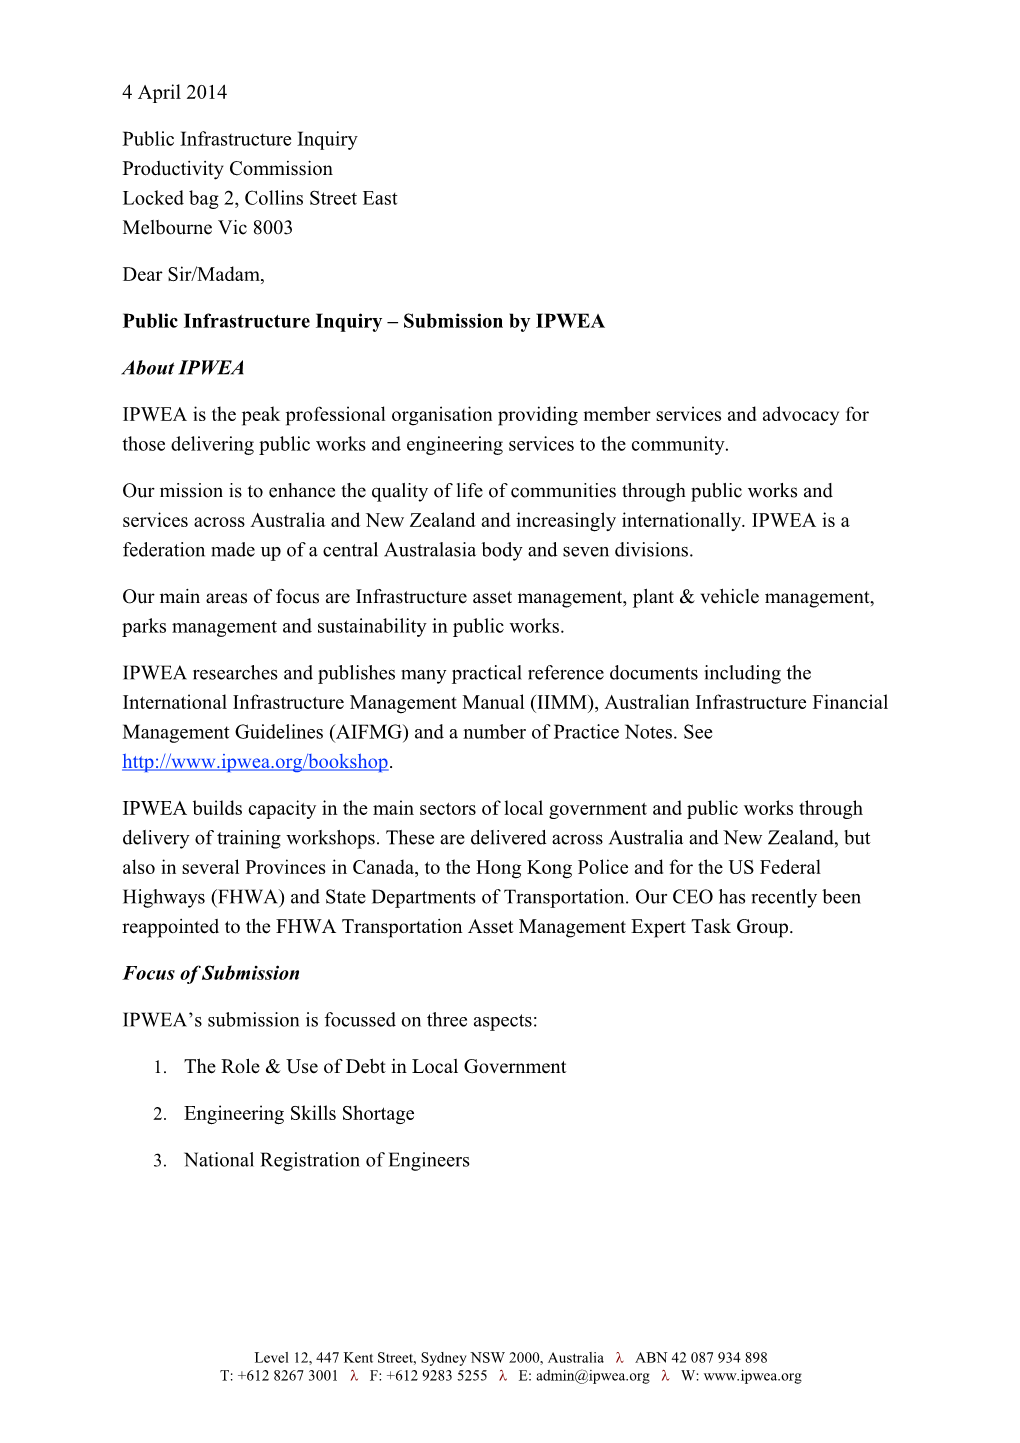 Submission DR162 - Institute of Public Works Engineering Australasia (IPWEA) - Public